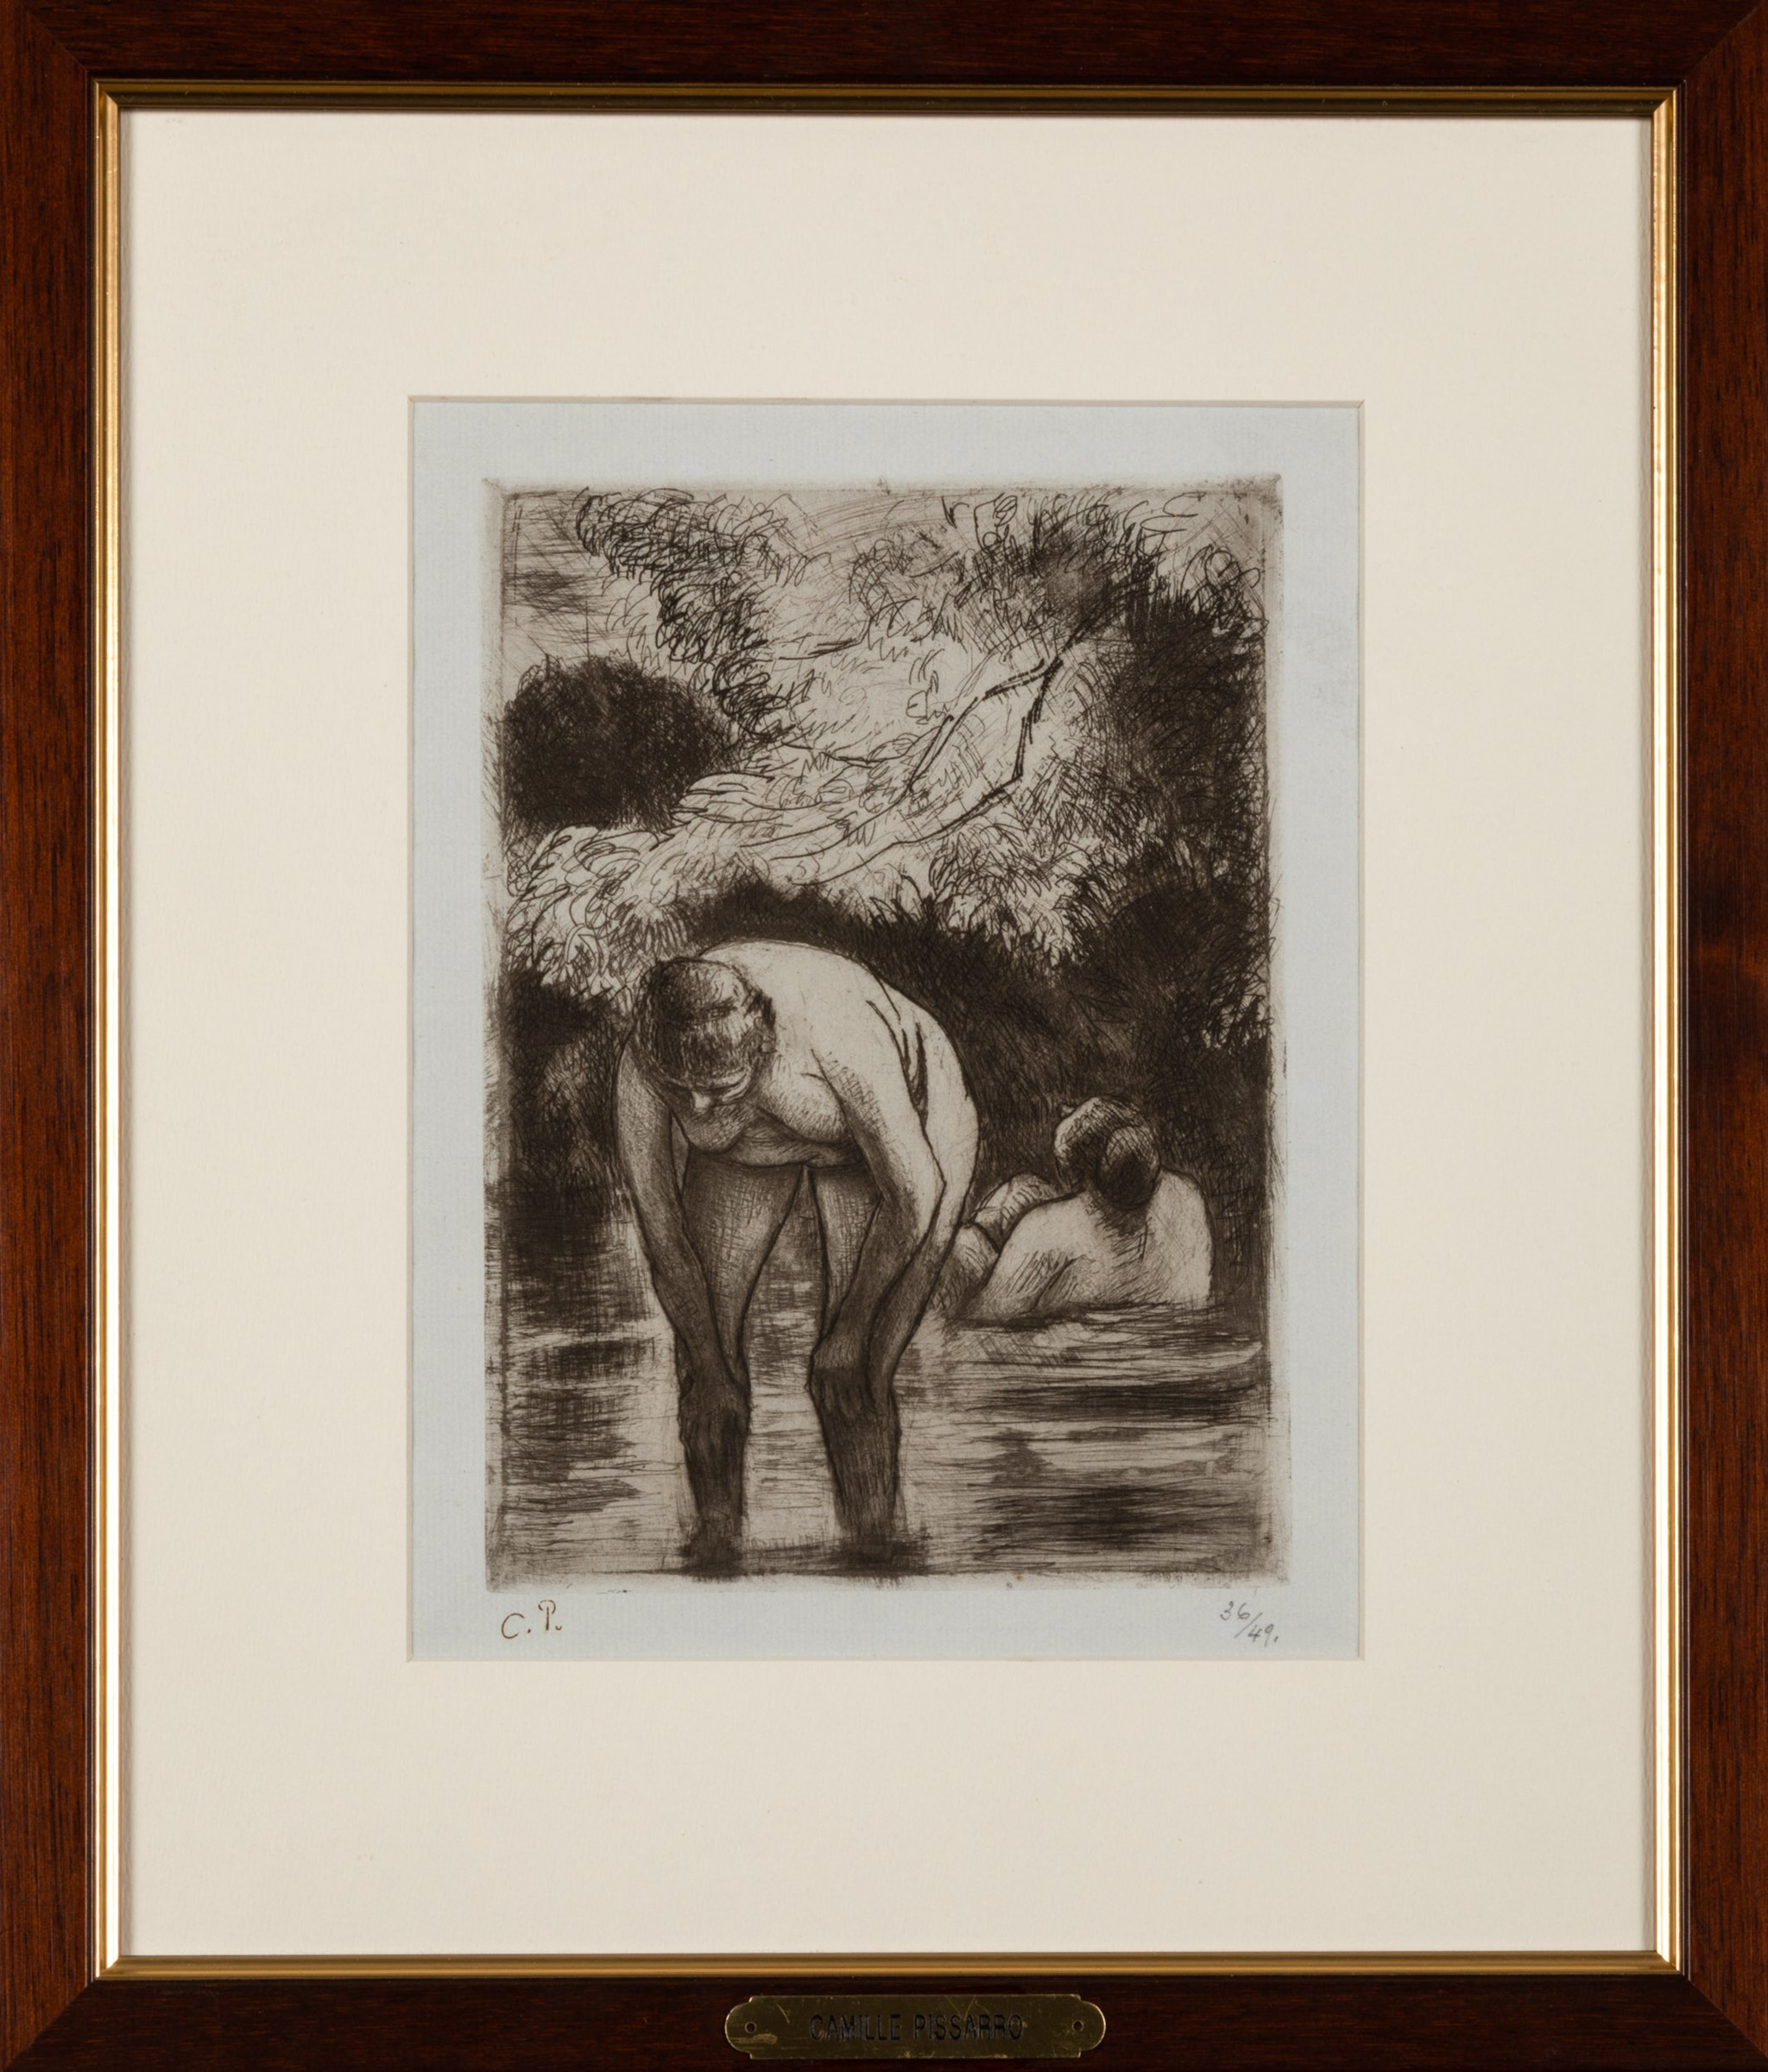 C. Pissarro, Les deux baigneuses, 1895 - Image 2 of 3